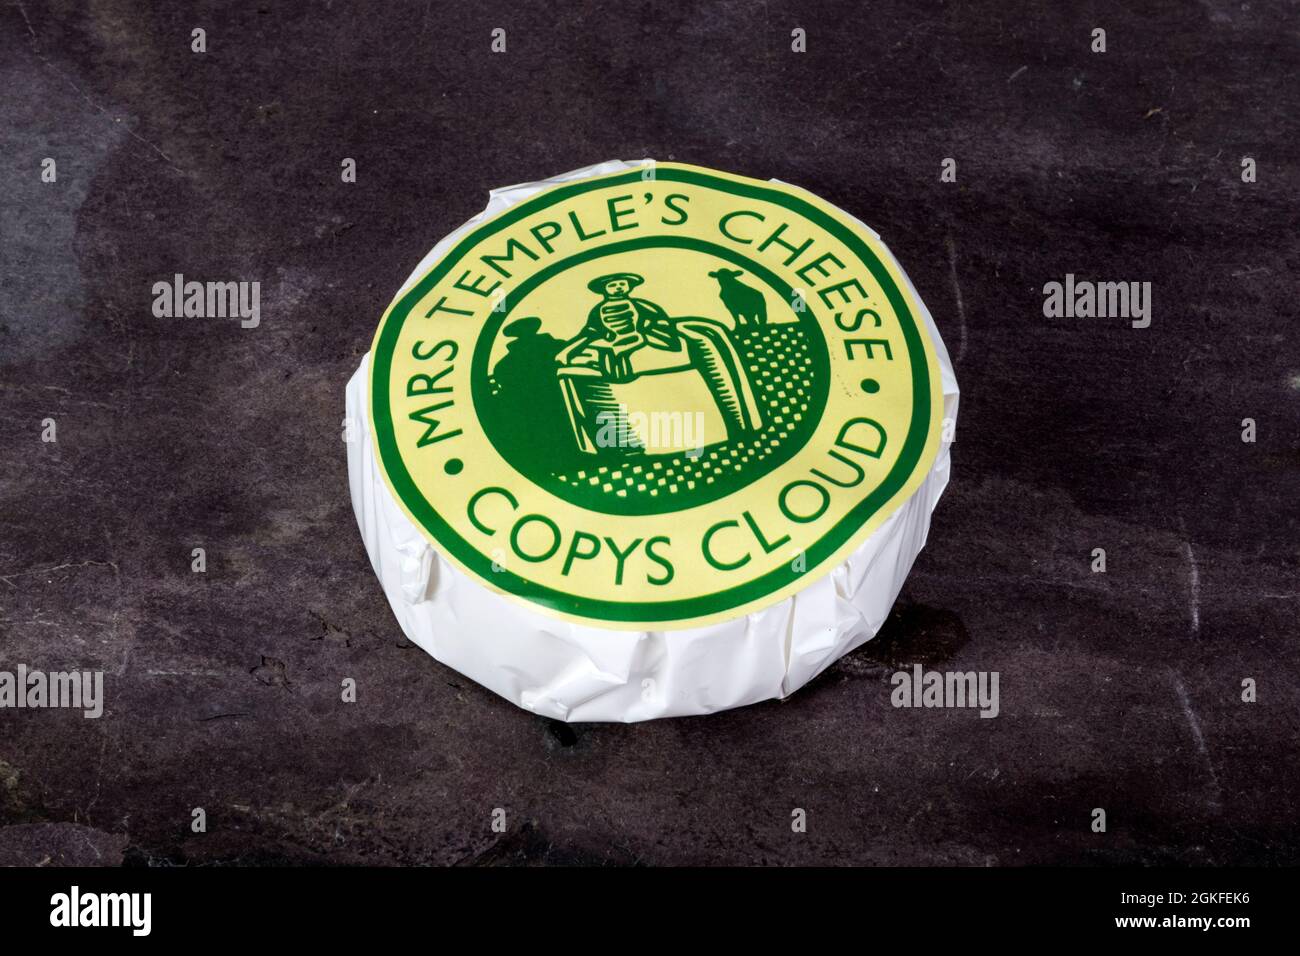 Le fromage Cosys Cloud de Mrs Temple de Copy's Green Farm à Wighton. Banque D'Images